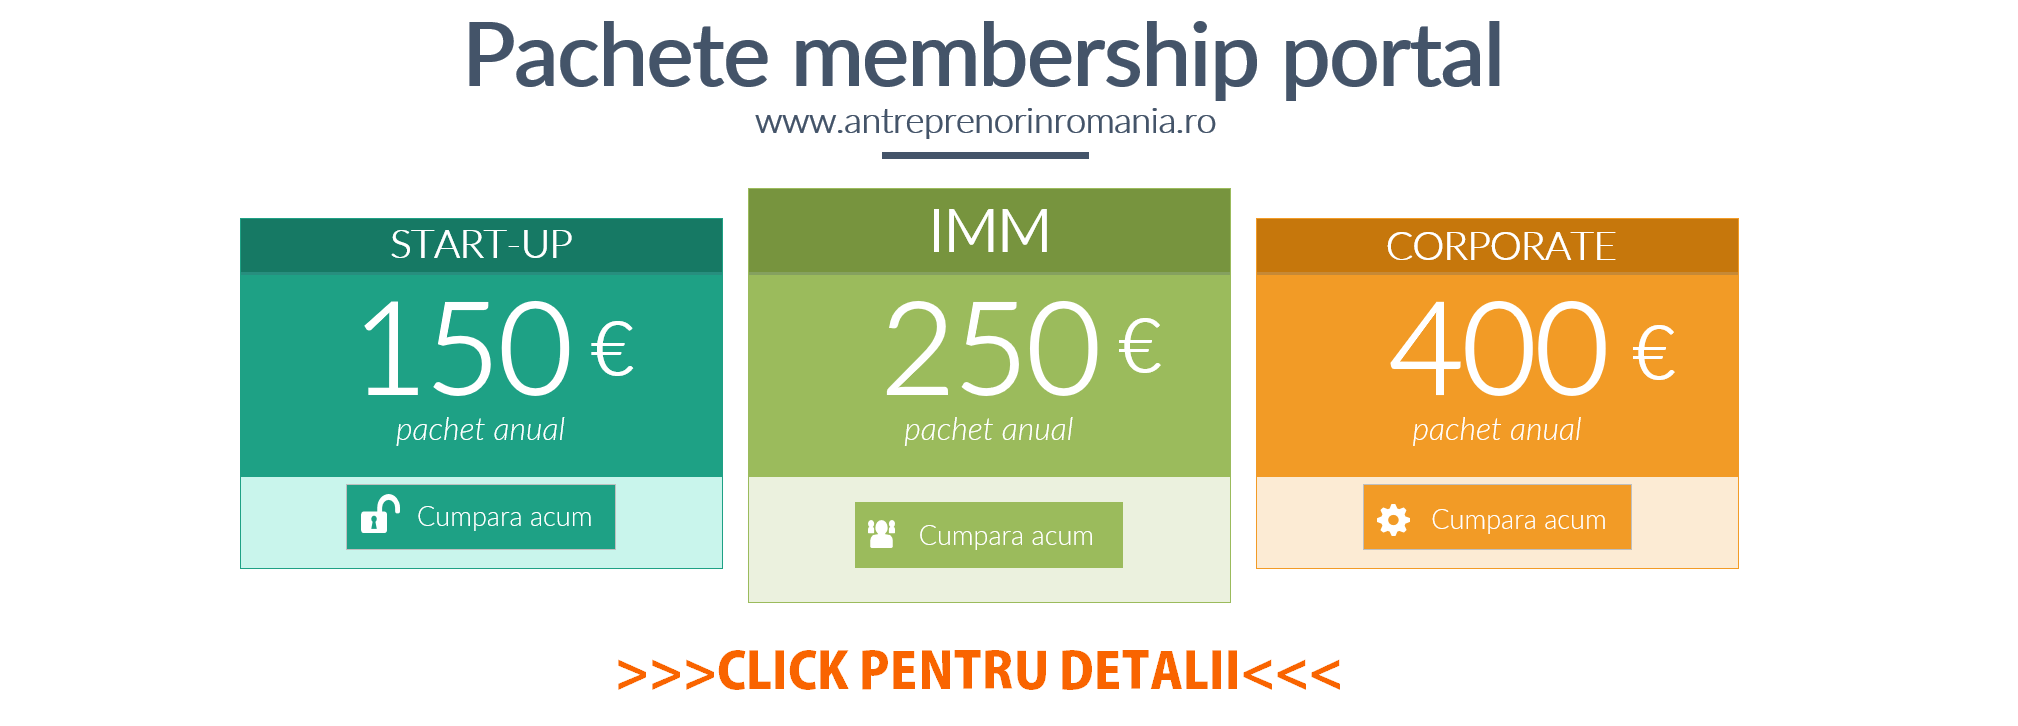 Membership portal